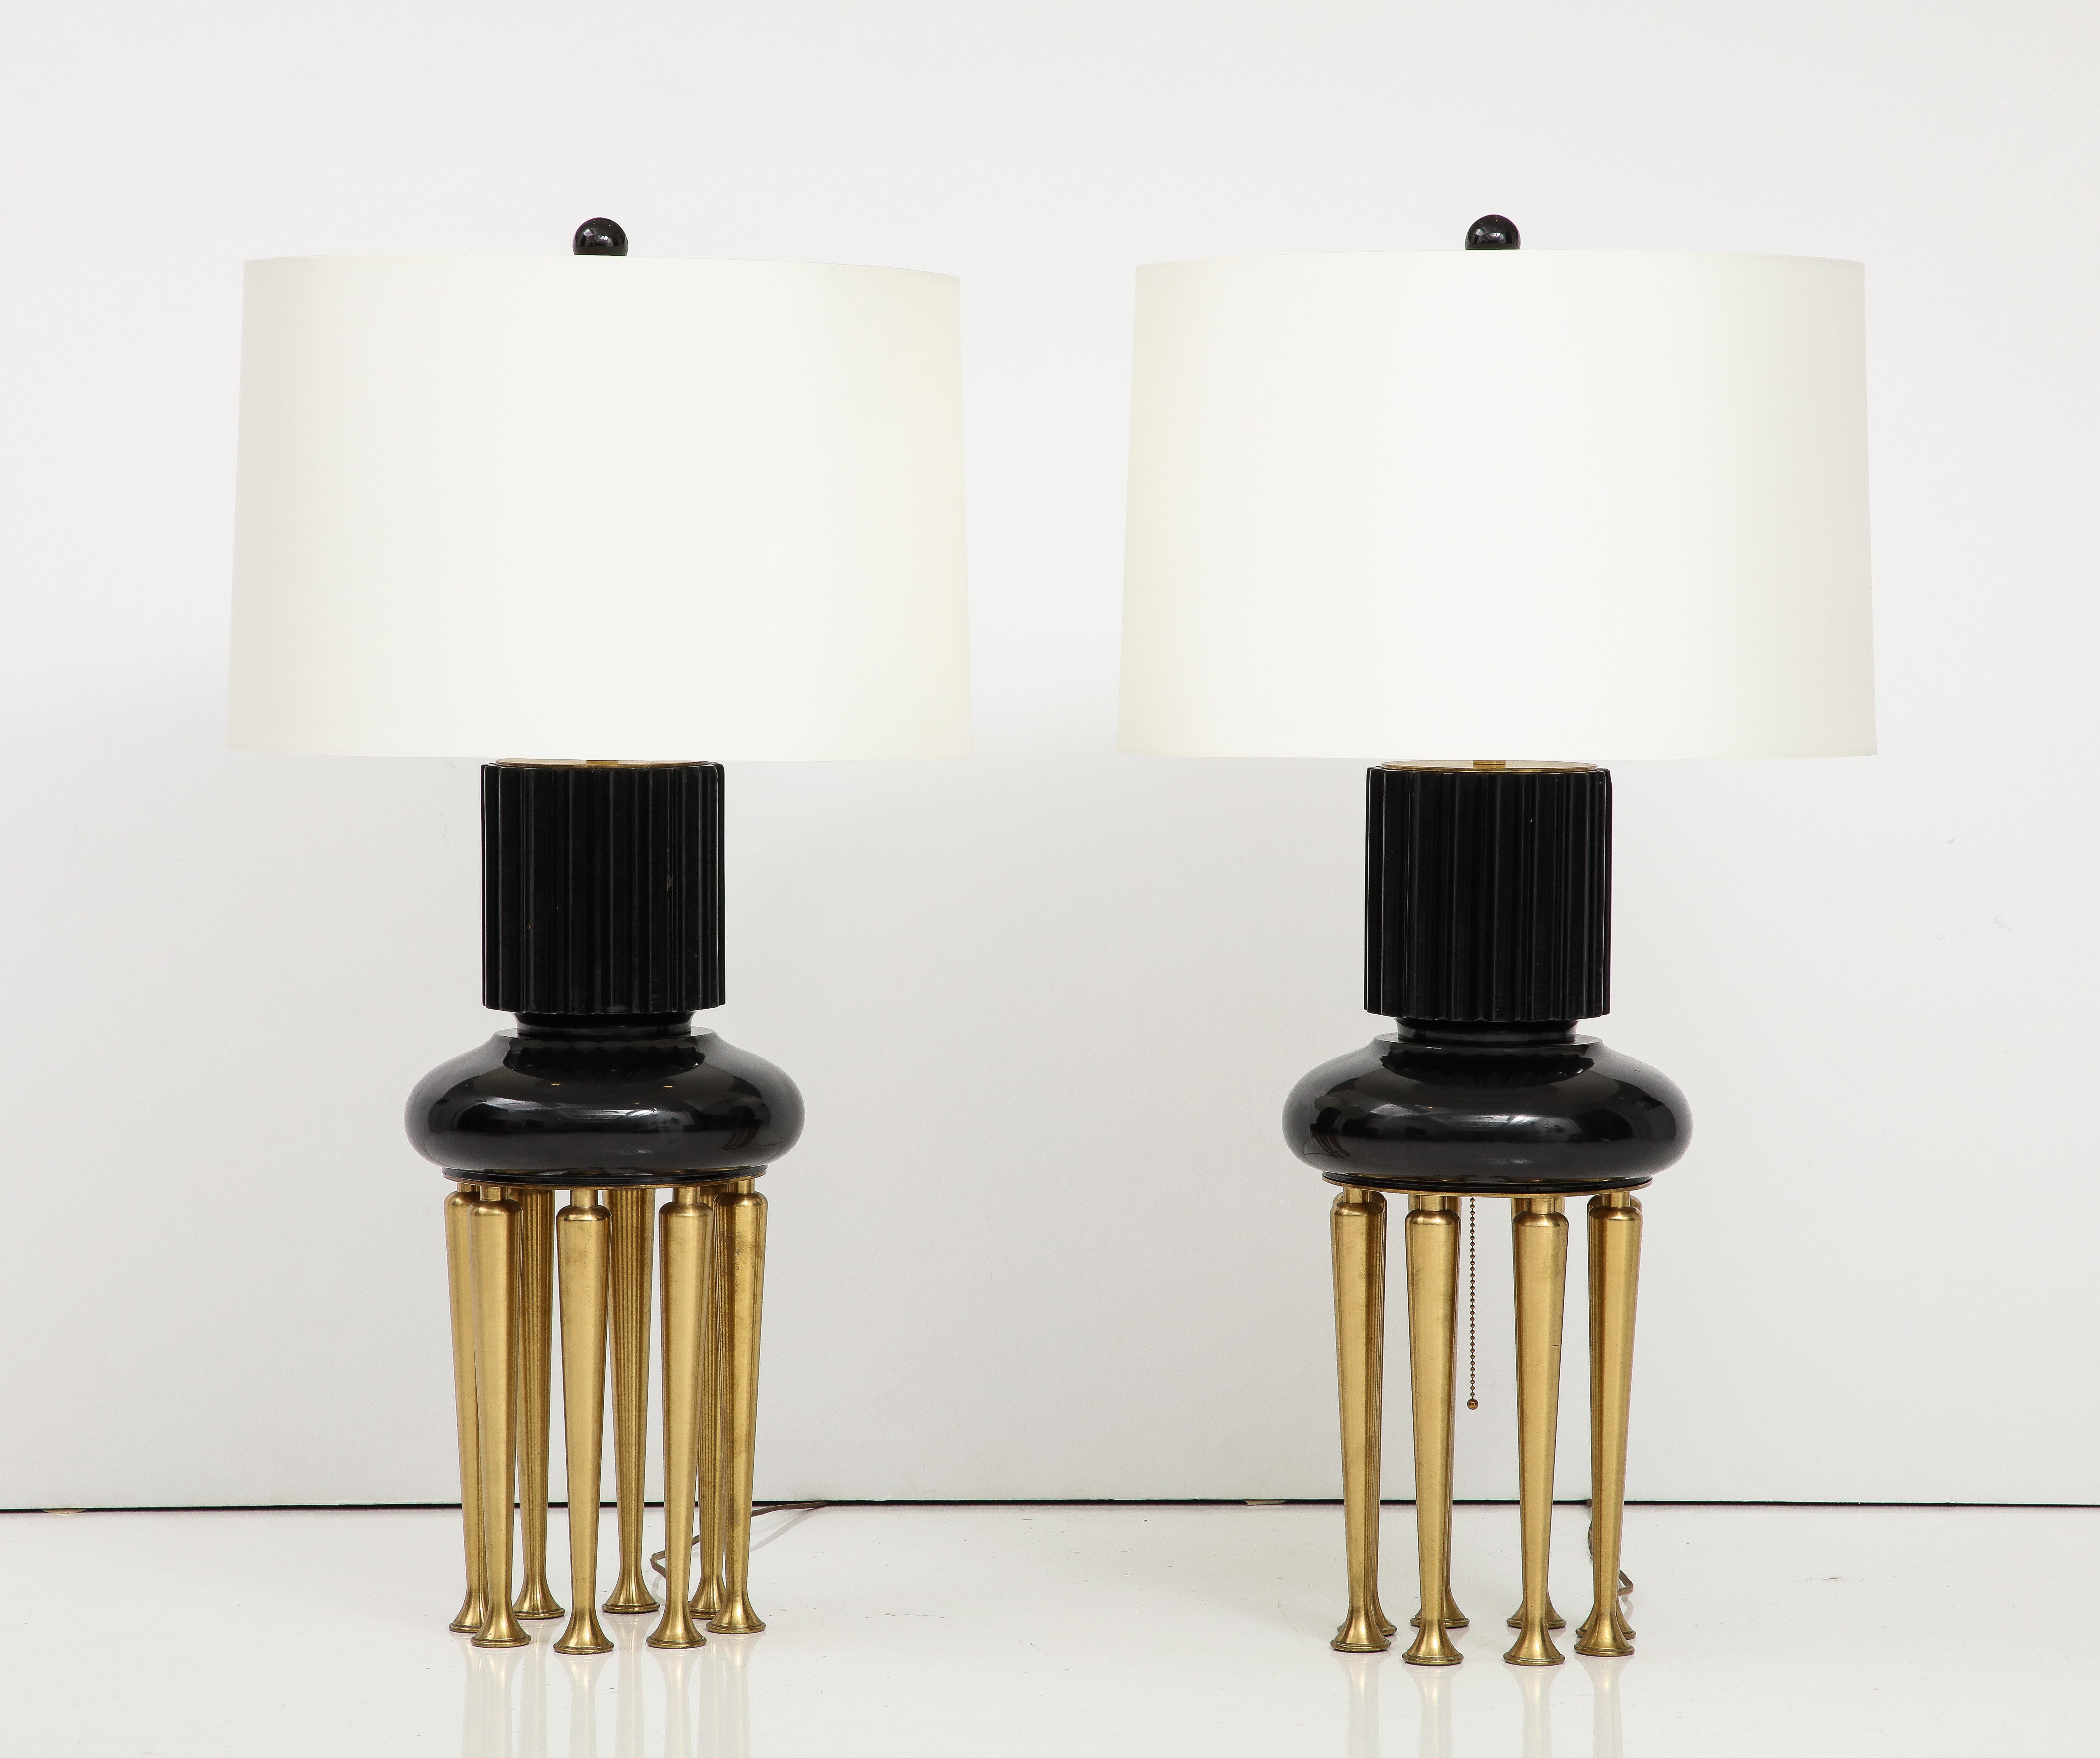 Spectaculaire et rare paire de lampes James Mont des années 1950.
Les corps principaux de la lampe, laqués, sont soutenus par huit supports coniques. 
jambes en laiton, et ils ont été nouvellement recâblés pour les États-Unis avec
double grappes